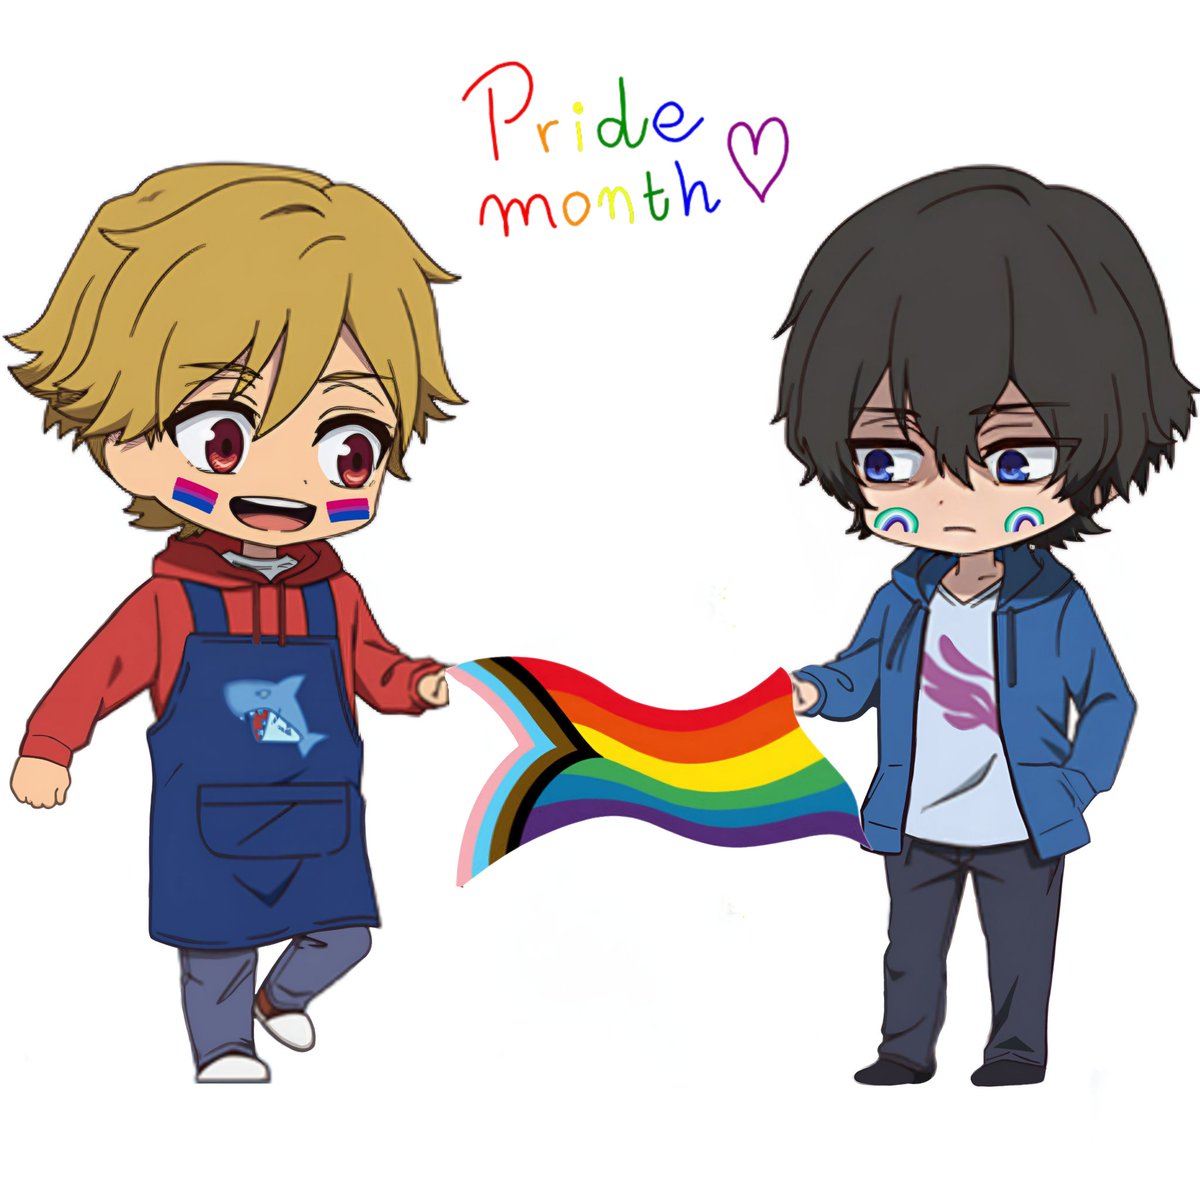 Happy Pride Month! 🏳️‍🌈

#バディダディ #BuddyDaddies #KazuRei 💙❤️